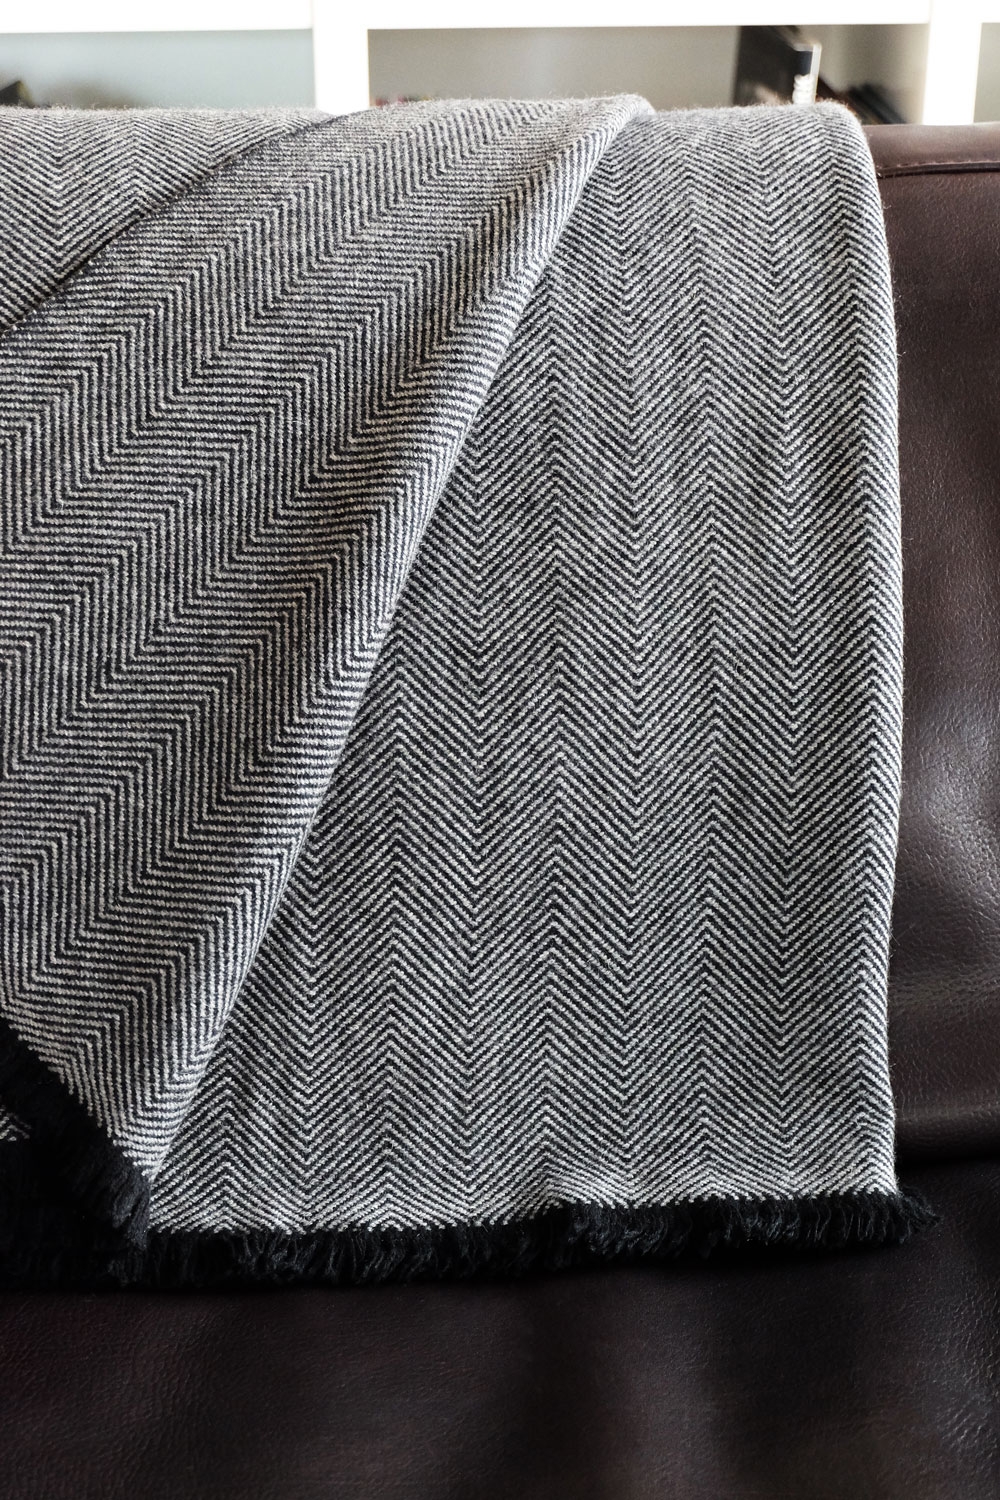 Cachemire accessoires homewear erable 130 x 190 noir gris chine 130 x 190 cm